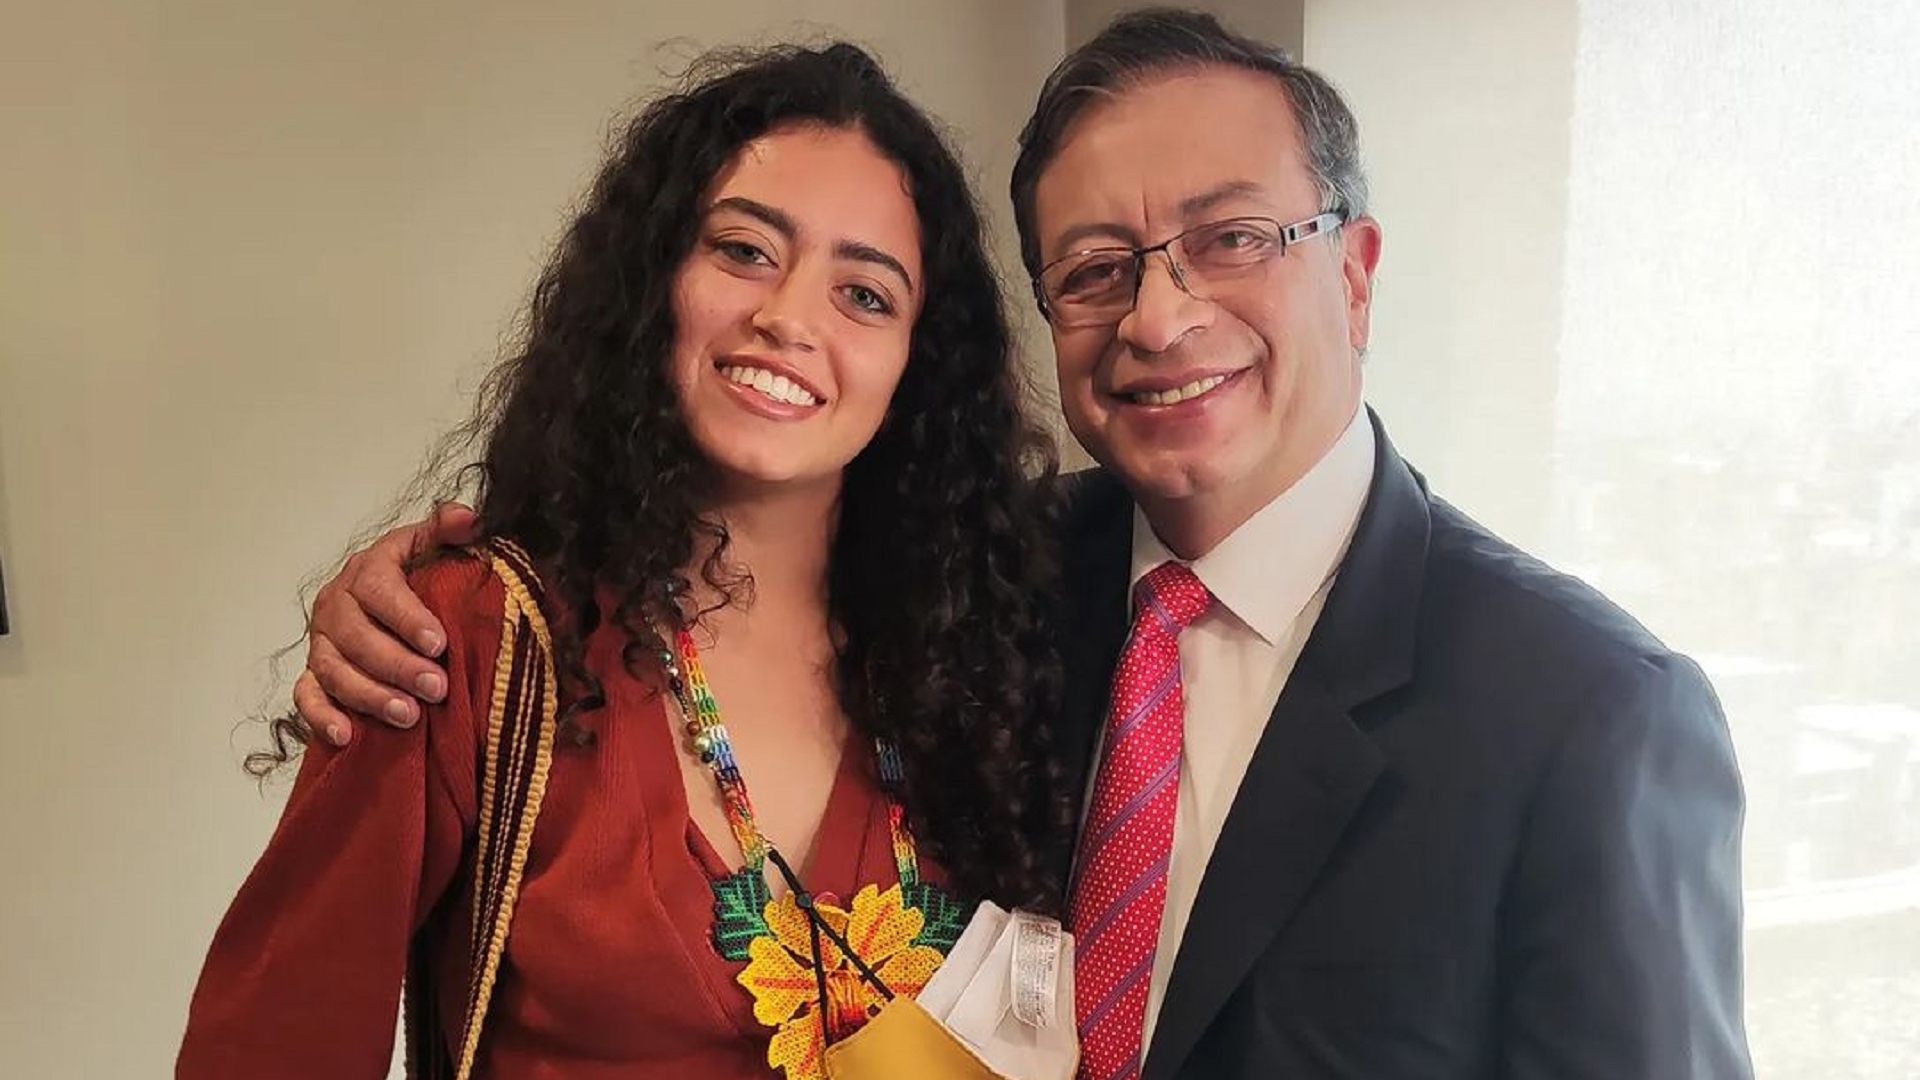 Sofía Petro, hija del Presidente electo, se va del país nuevamente